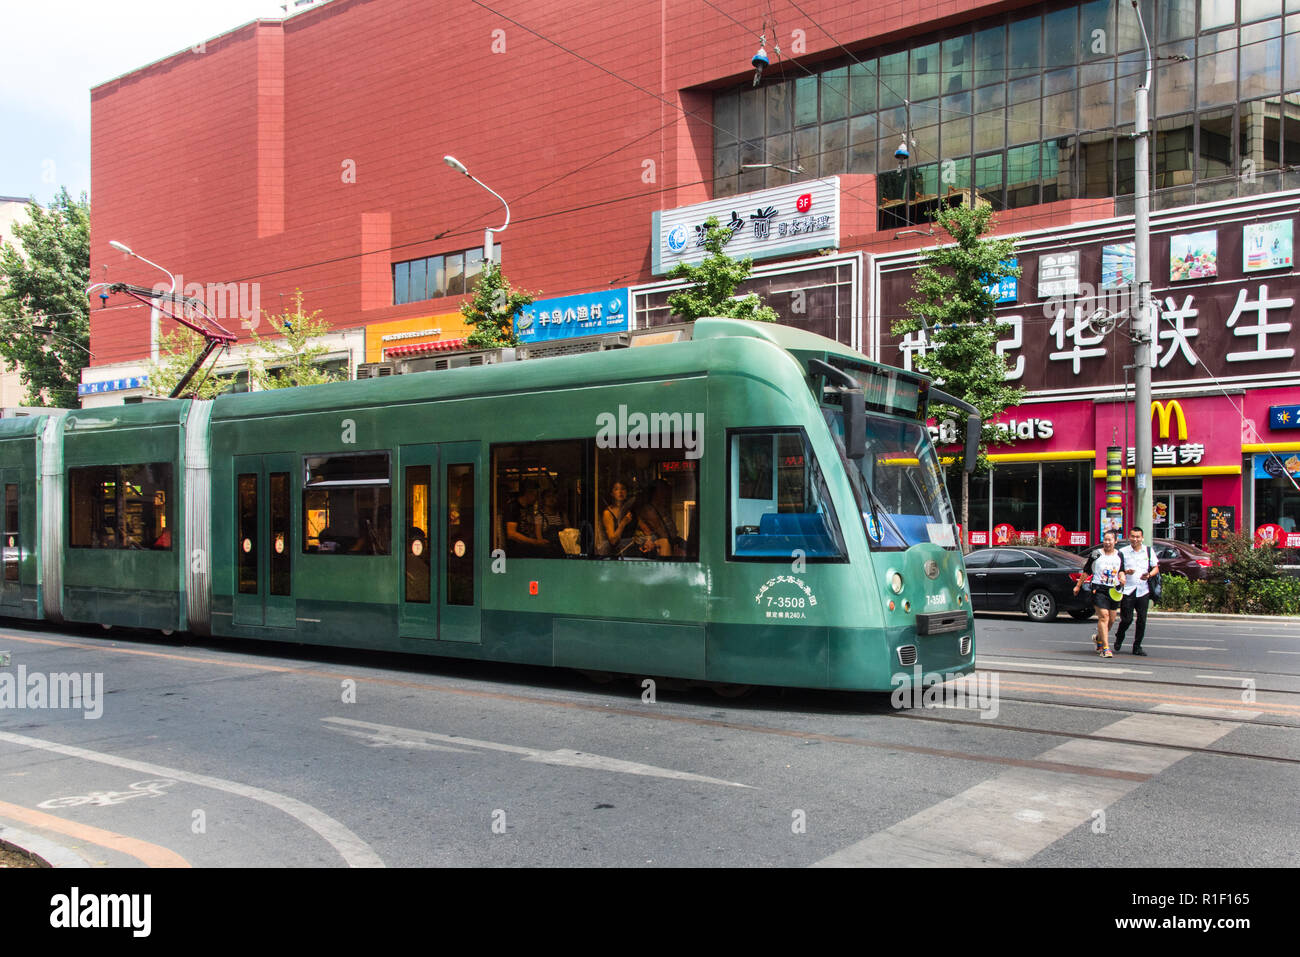 DALIAN, Liaoning, Chine - 22 juil 2018 : Dalian dispose d'un vaste service de tramway Banque D'Images